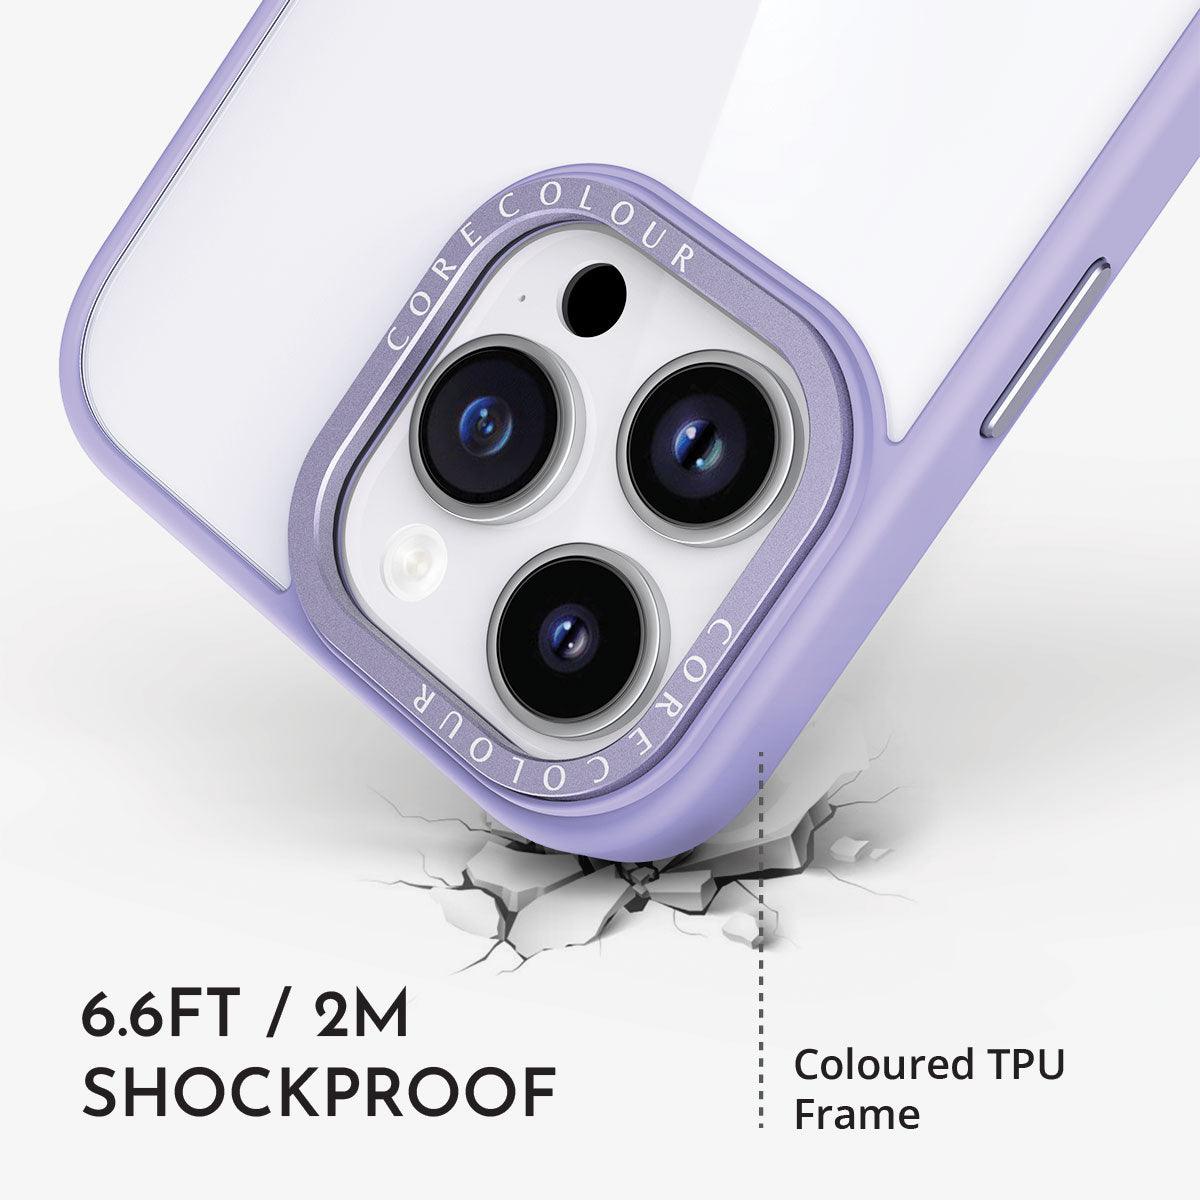 iPhone 11 Pro Jet Black Clear Phone Case - CORECOLOUR AU